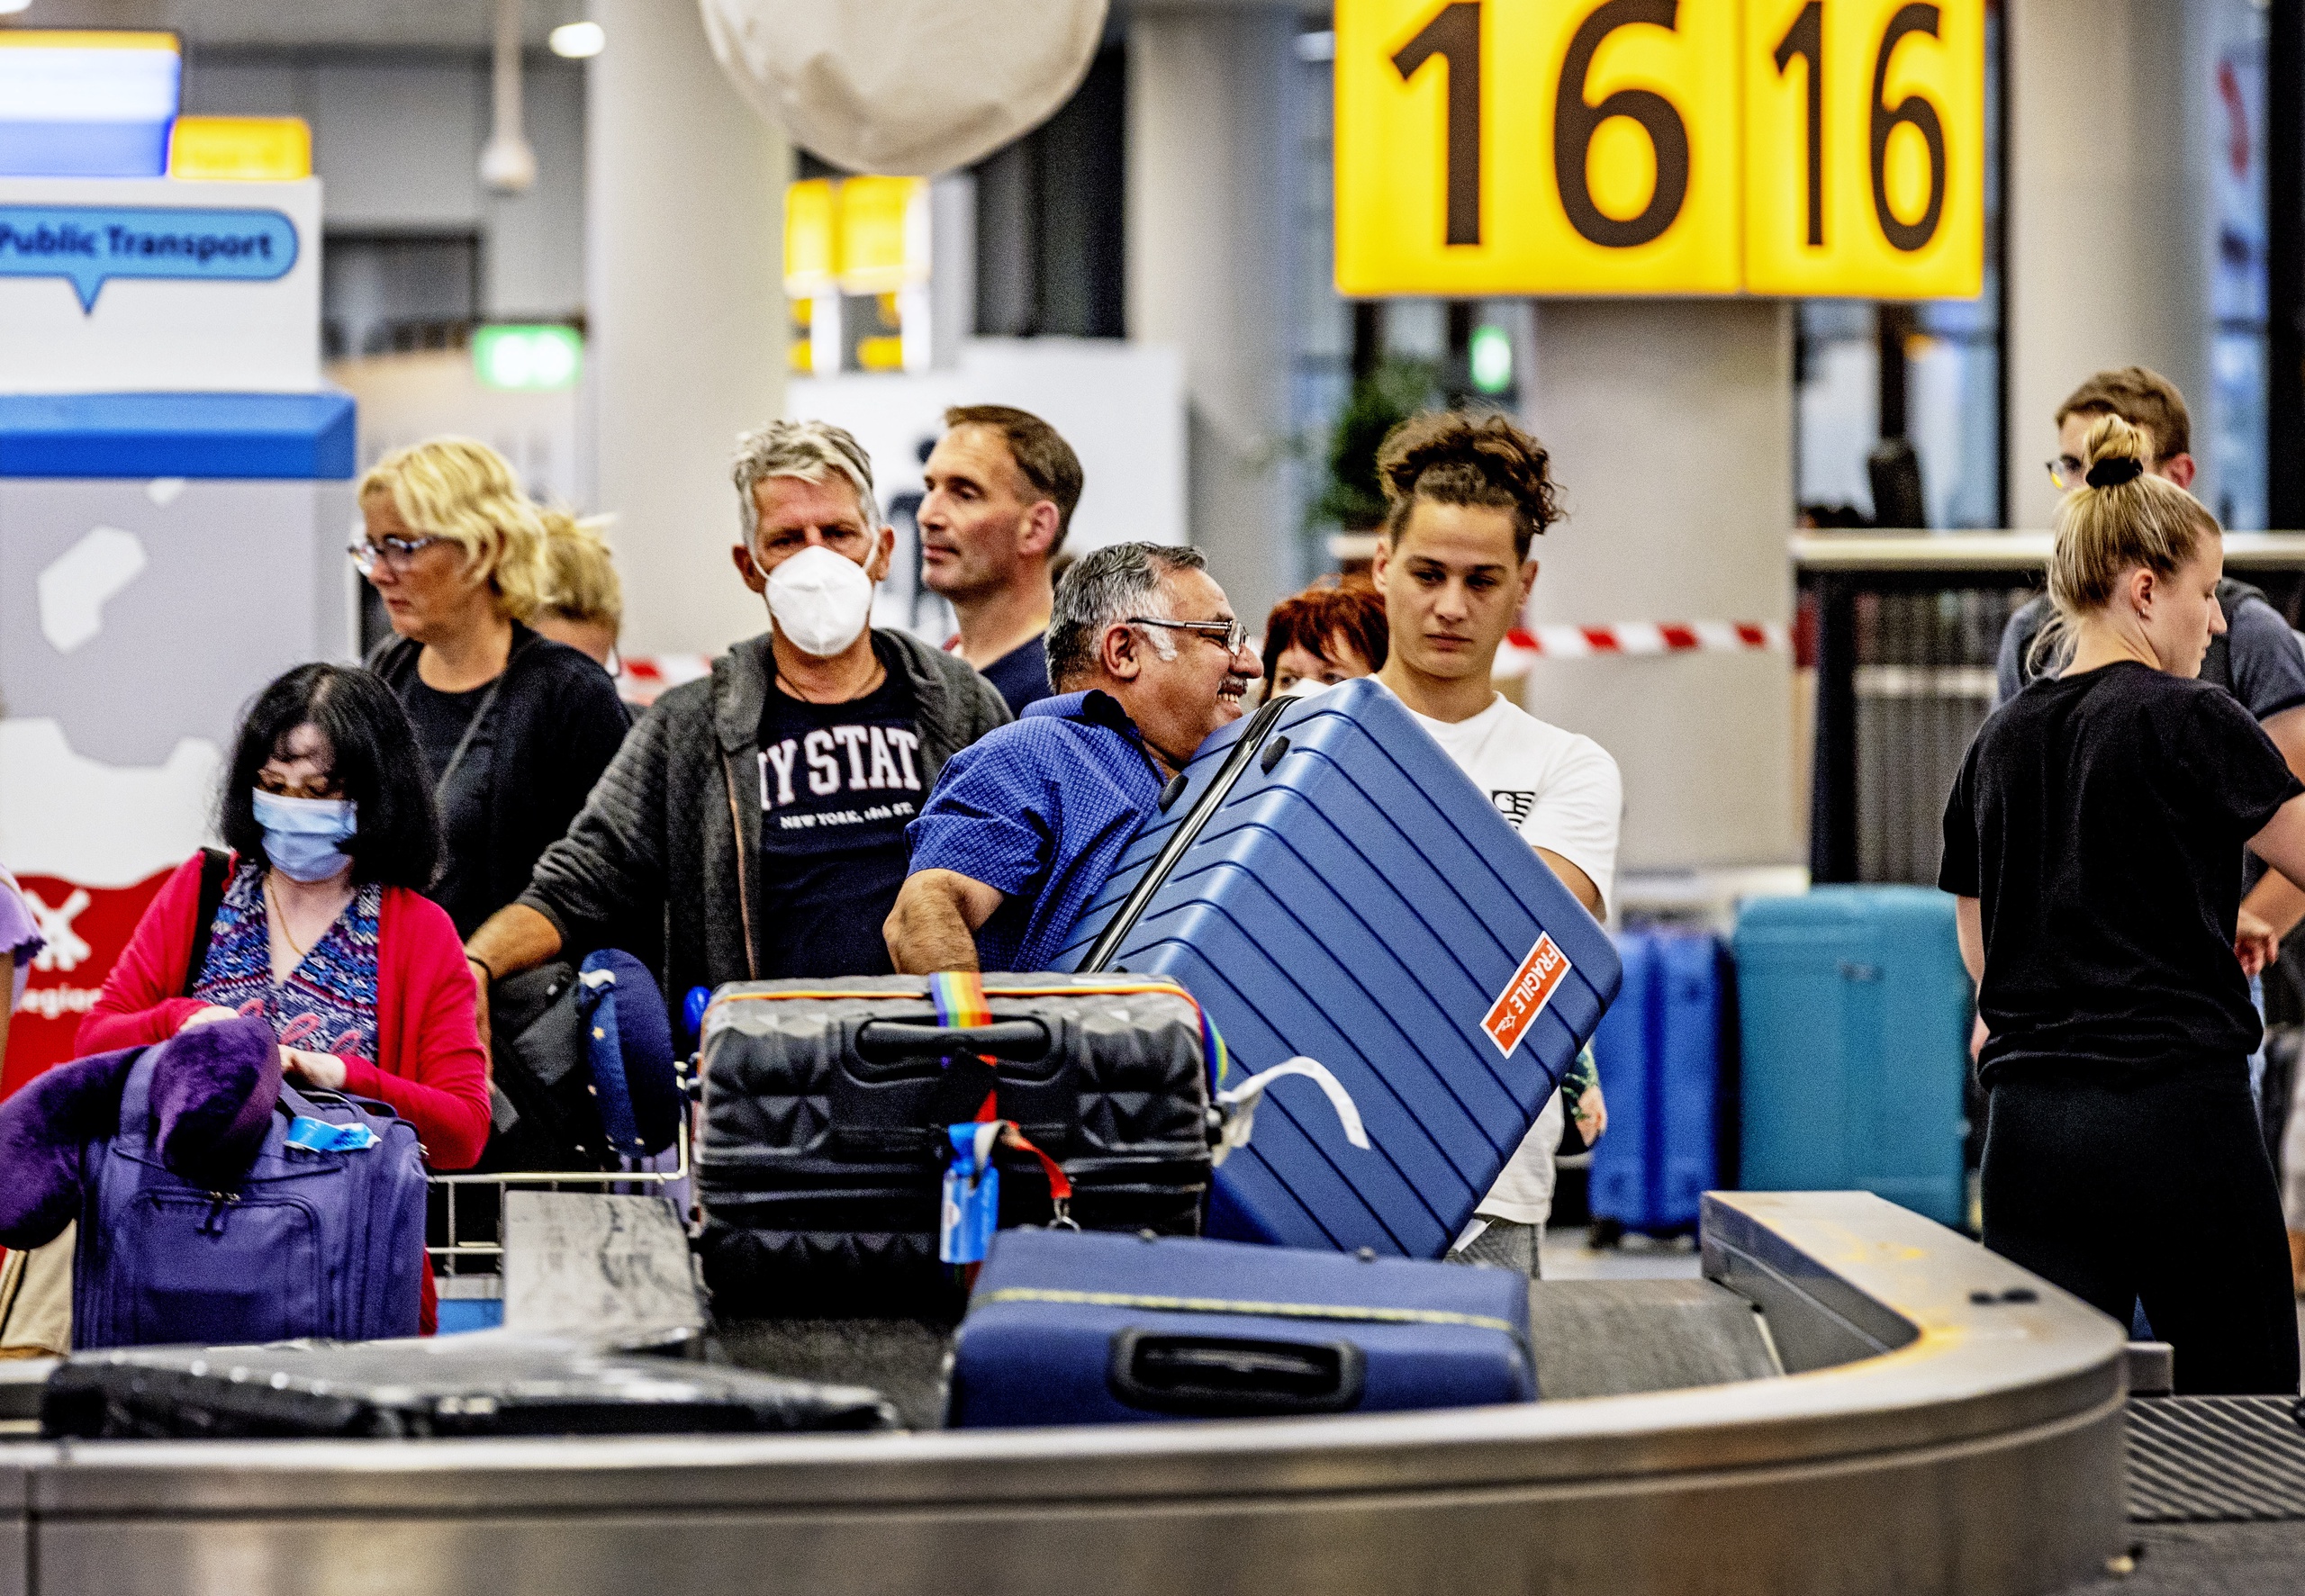 Personeelsgebrek bij de bagage-afhandeling: duizenden koffers staan onbeheerd bij de bagagebanden in de aankomsthallen van Schiphol